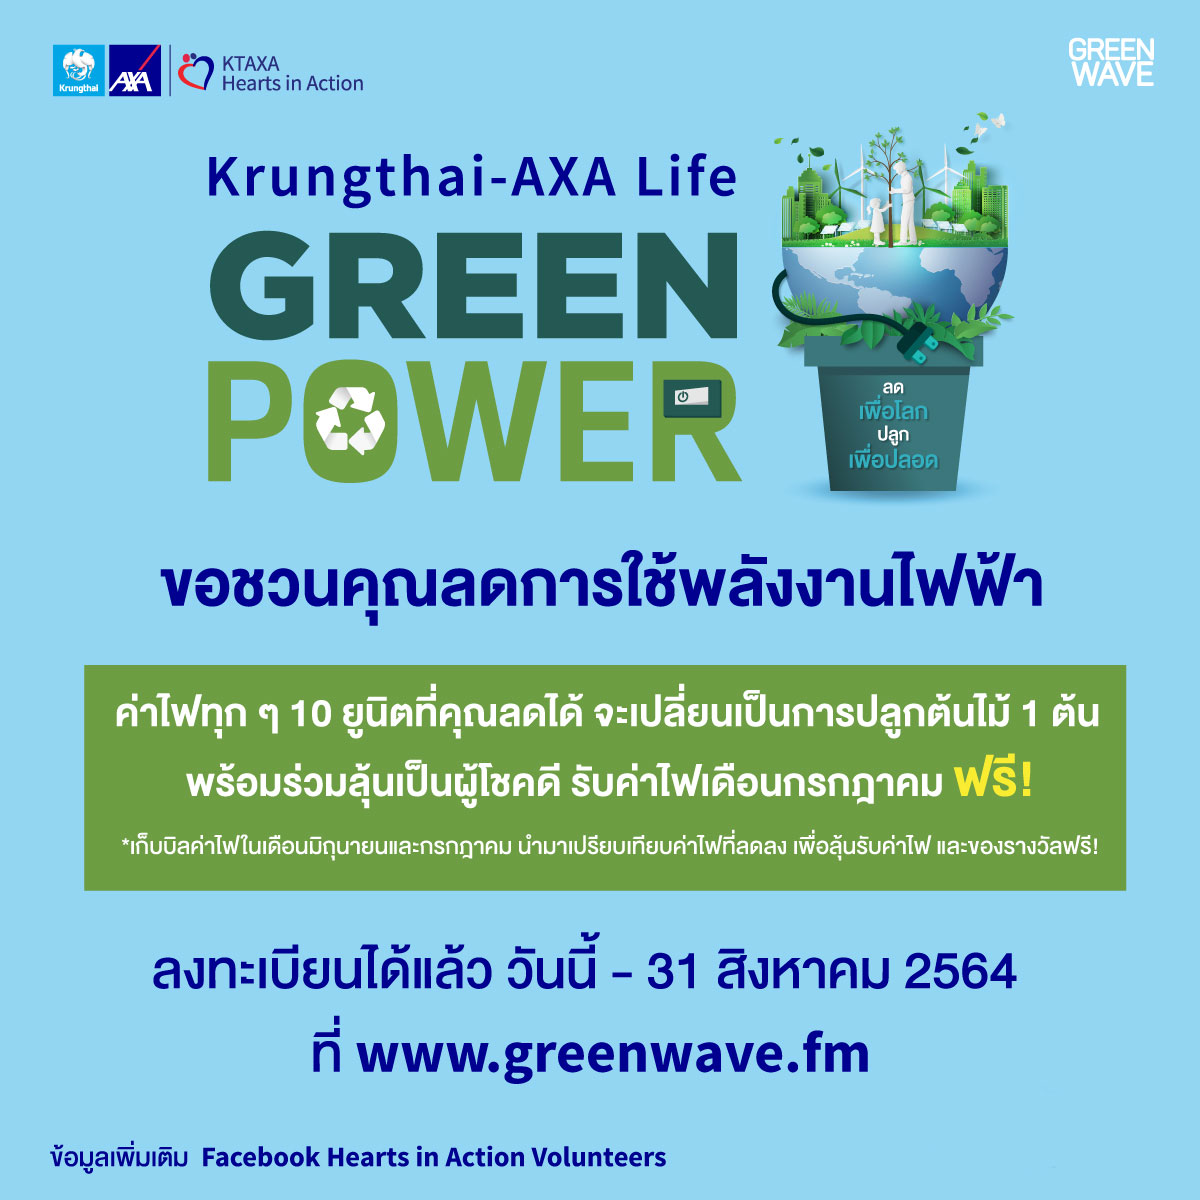 กรุงไทย-แอกซ่า ประกันชีวิต ร่วมกับ กรีนเวฟ 106.5 เอฟเอ็ม  ขอชวนคุณร่วมลงทะเบียนเข้าร่วมกิจกรรม “กรุงไทย-แอกซ่า ประกันชีวิต Green Power ลดเพื่อโลก ปลูกเพื่อปลอด” เพื่อลุ้นรับค่าไฟฟ้า เดือนกรกฎาคม ฟรี !